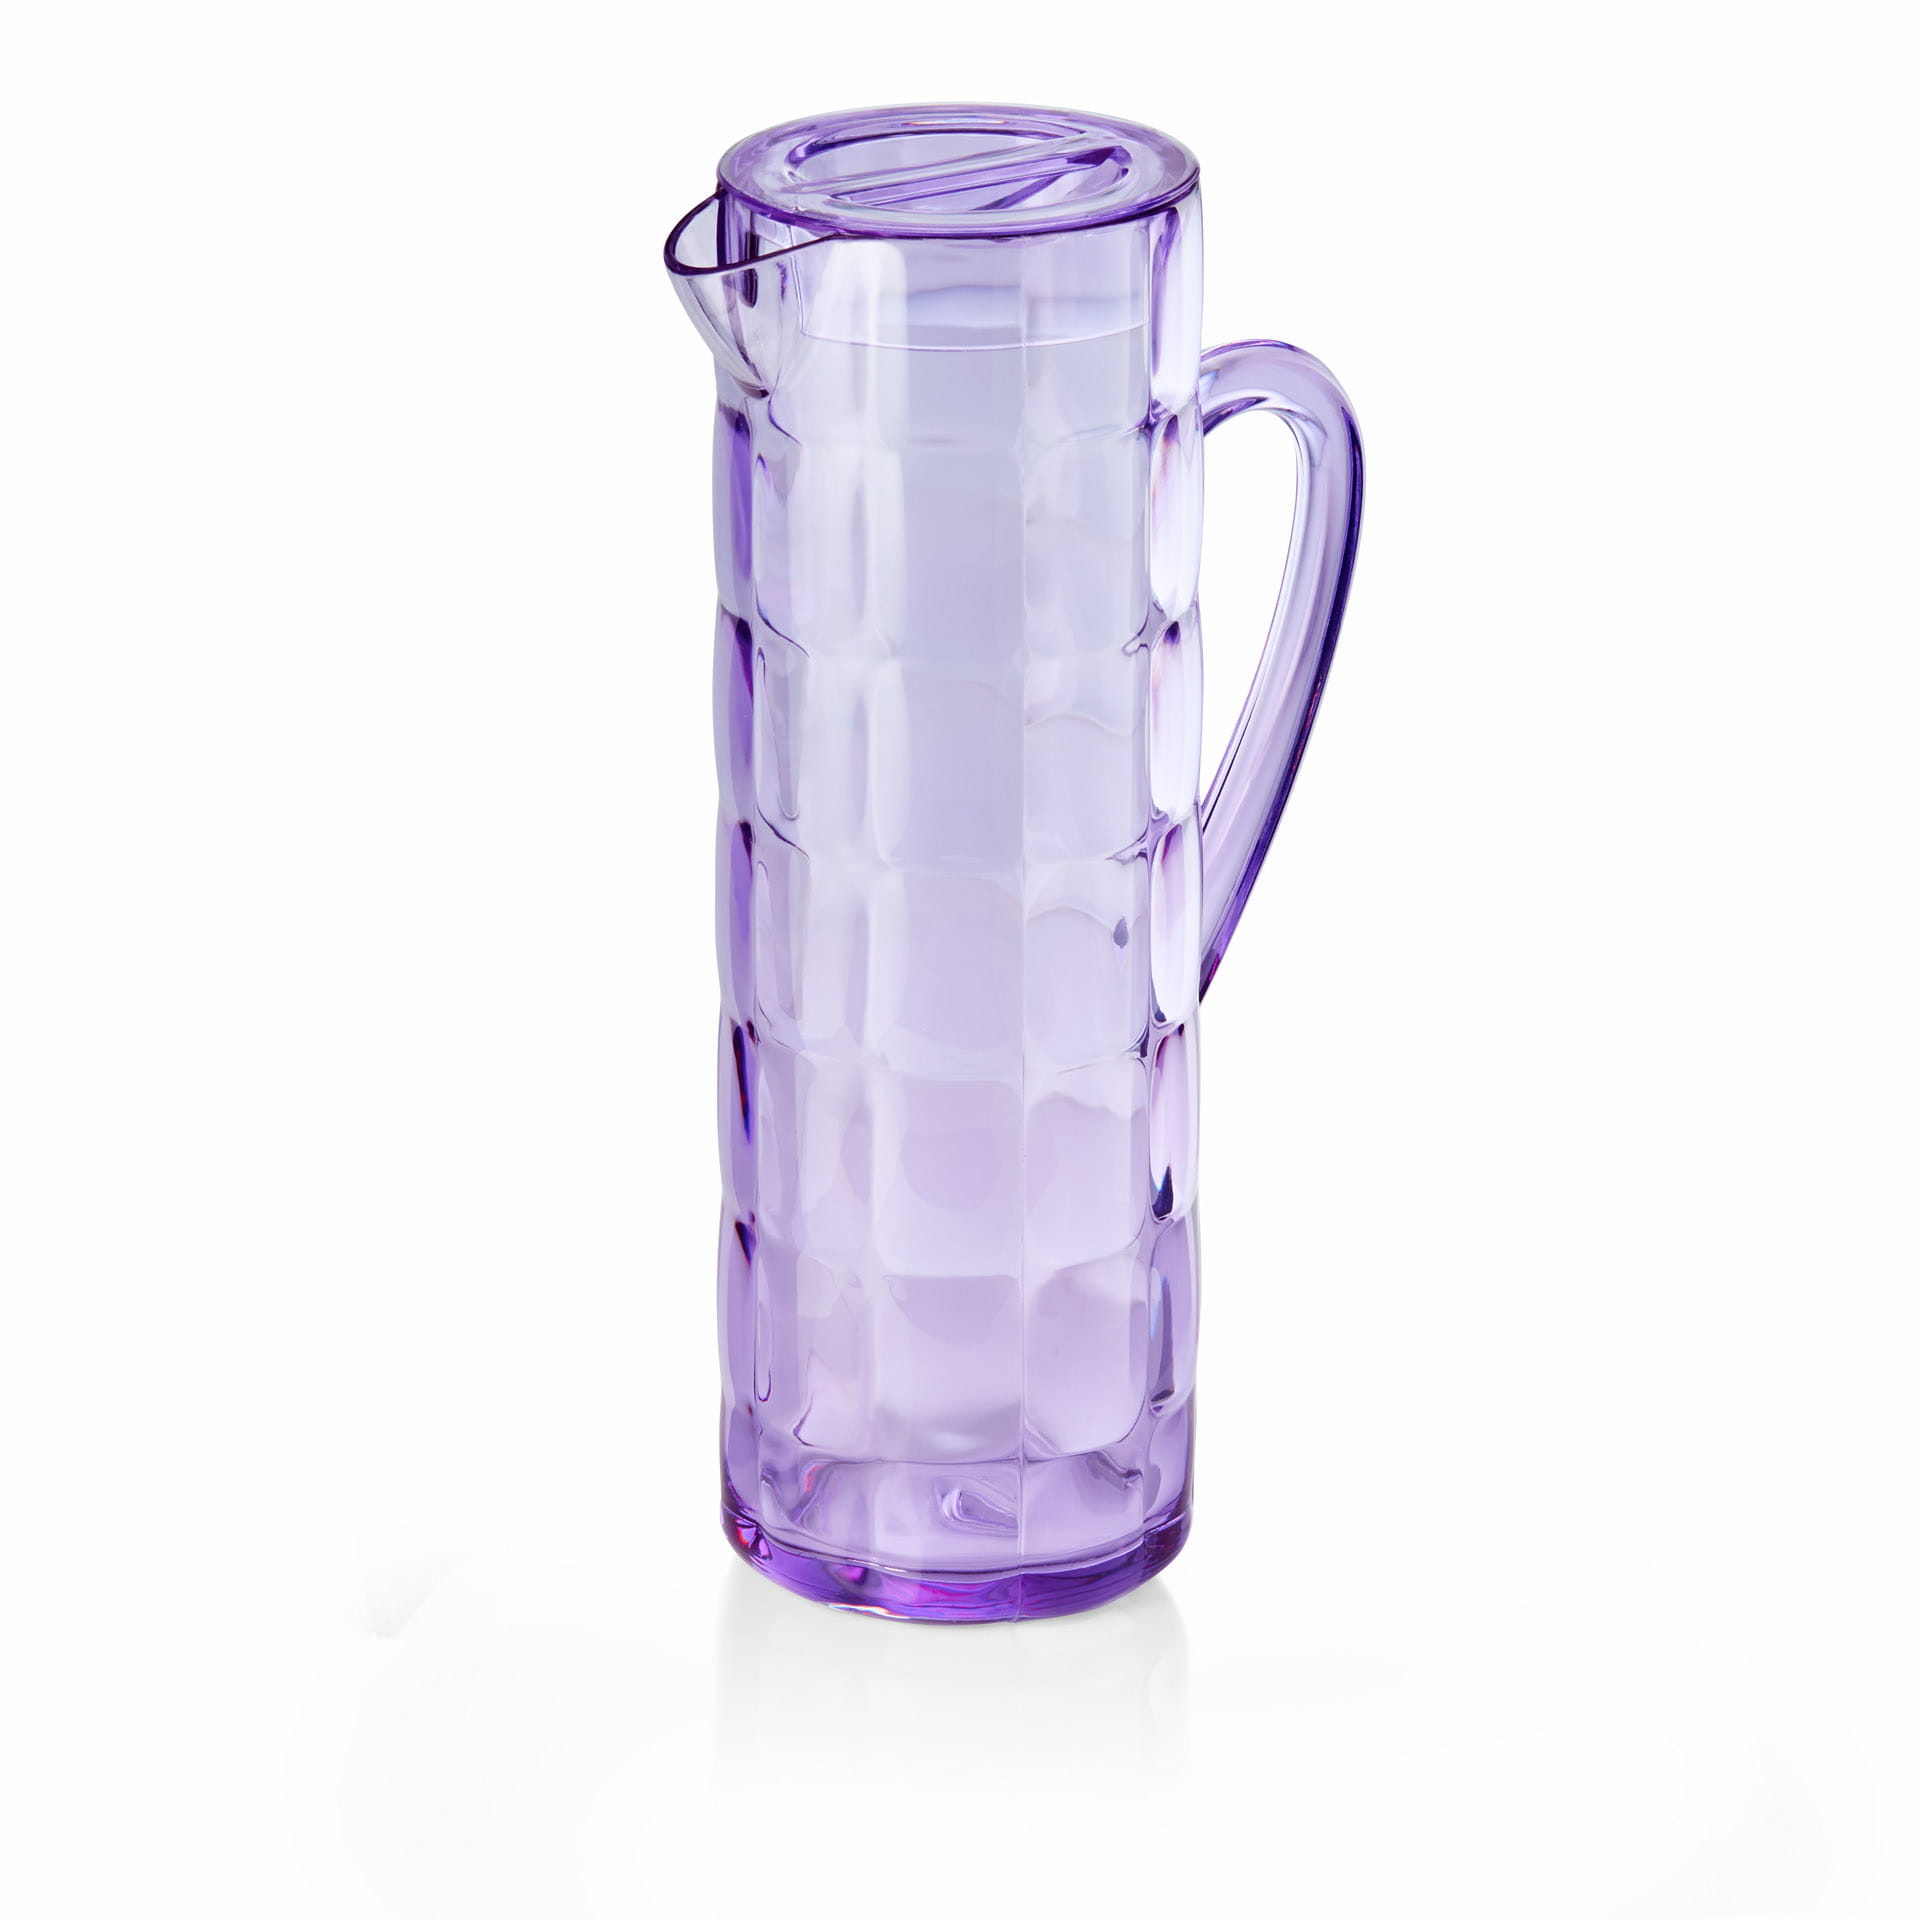 Krug - BPA­-frei - Serie Summer - violett - Höhe 28,5 cm - Ø oben / unten 9,5 / 9,5 cm - Inhalt 1,5 l - SAN - 9473150-A